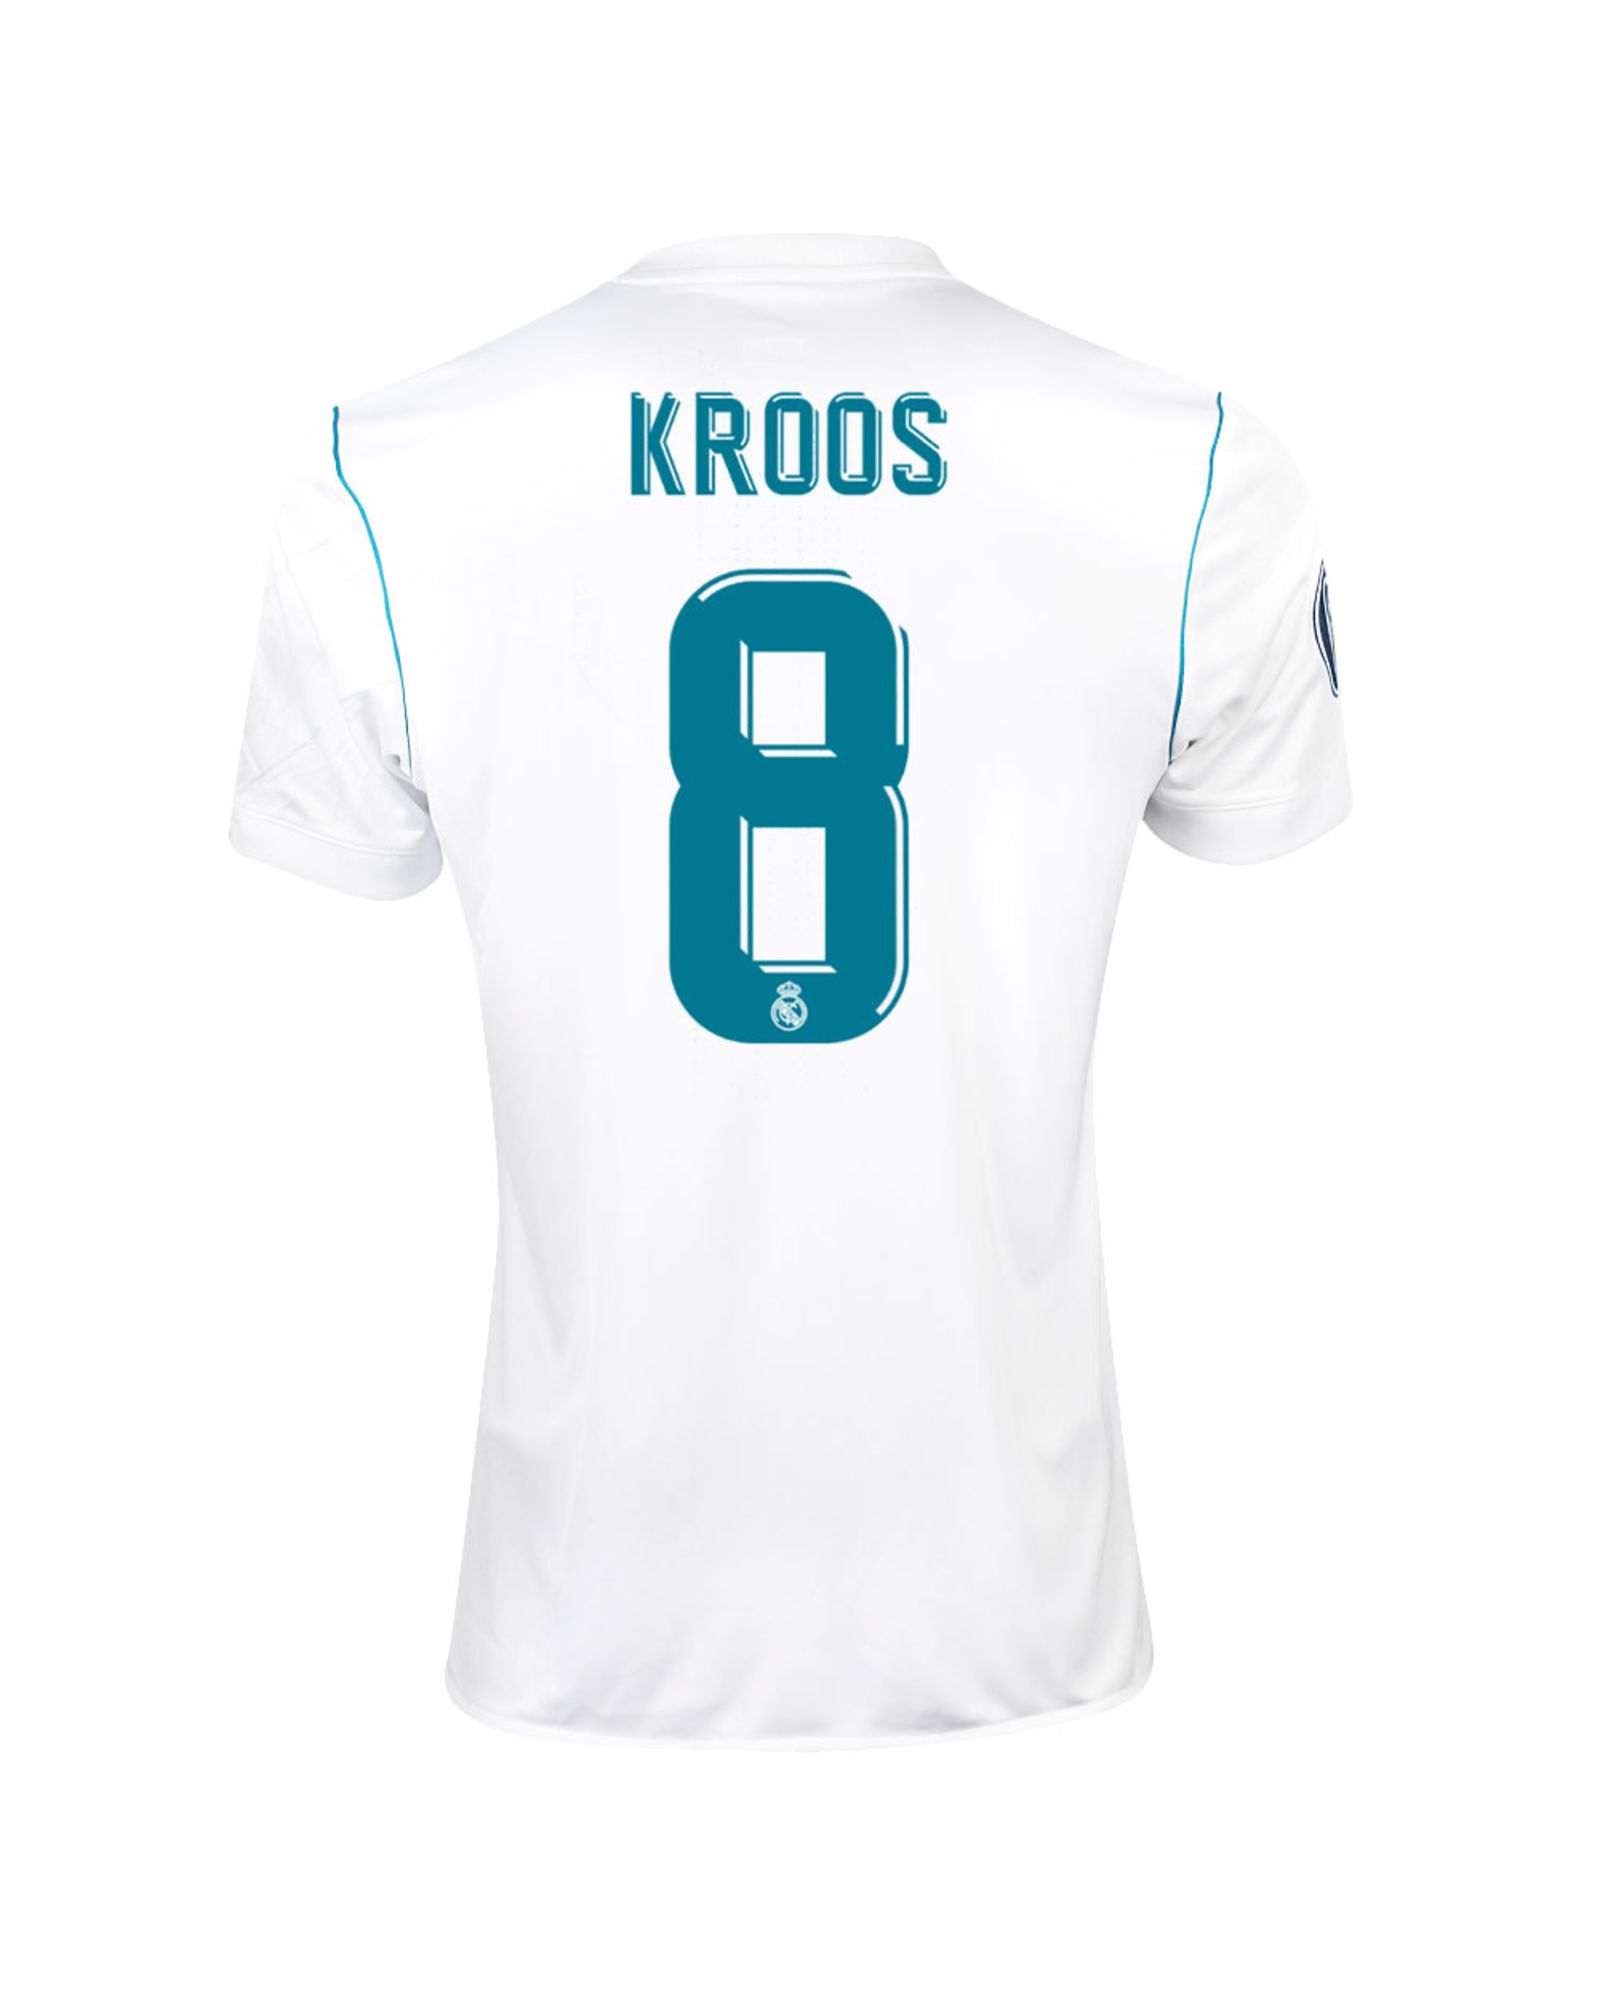 Camiseta 1ª Real Madrid 2017/2018 Kroos UCL - Fútbol Factory